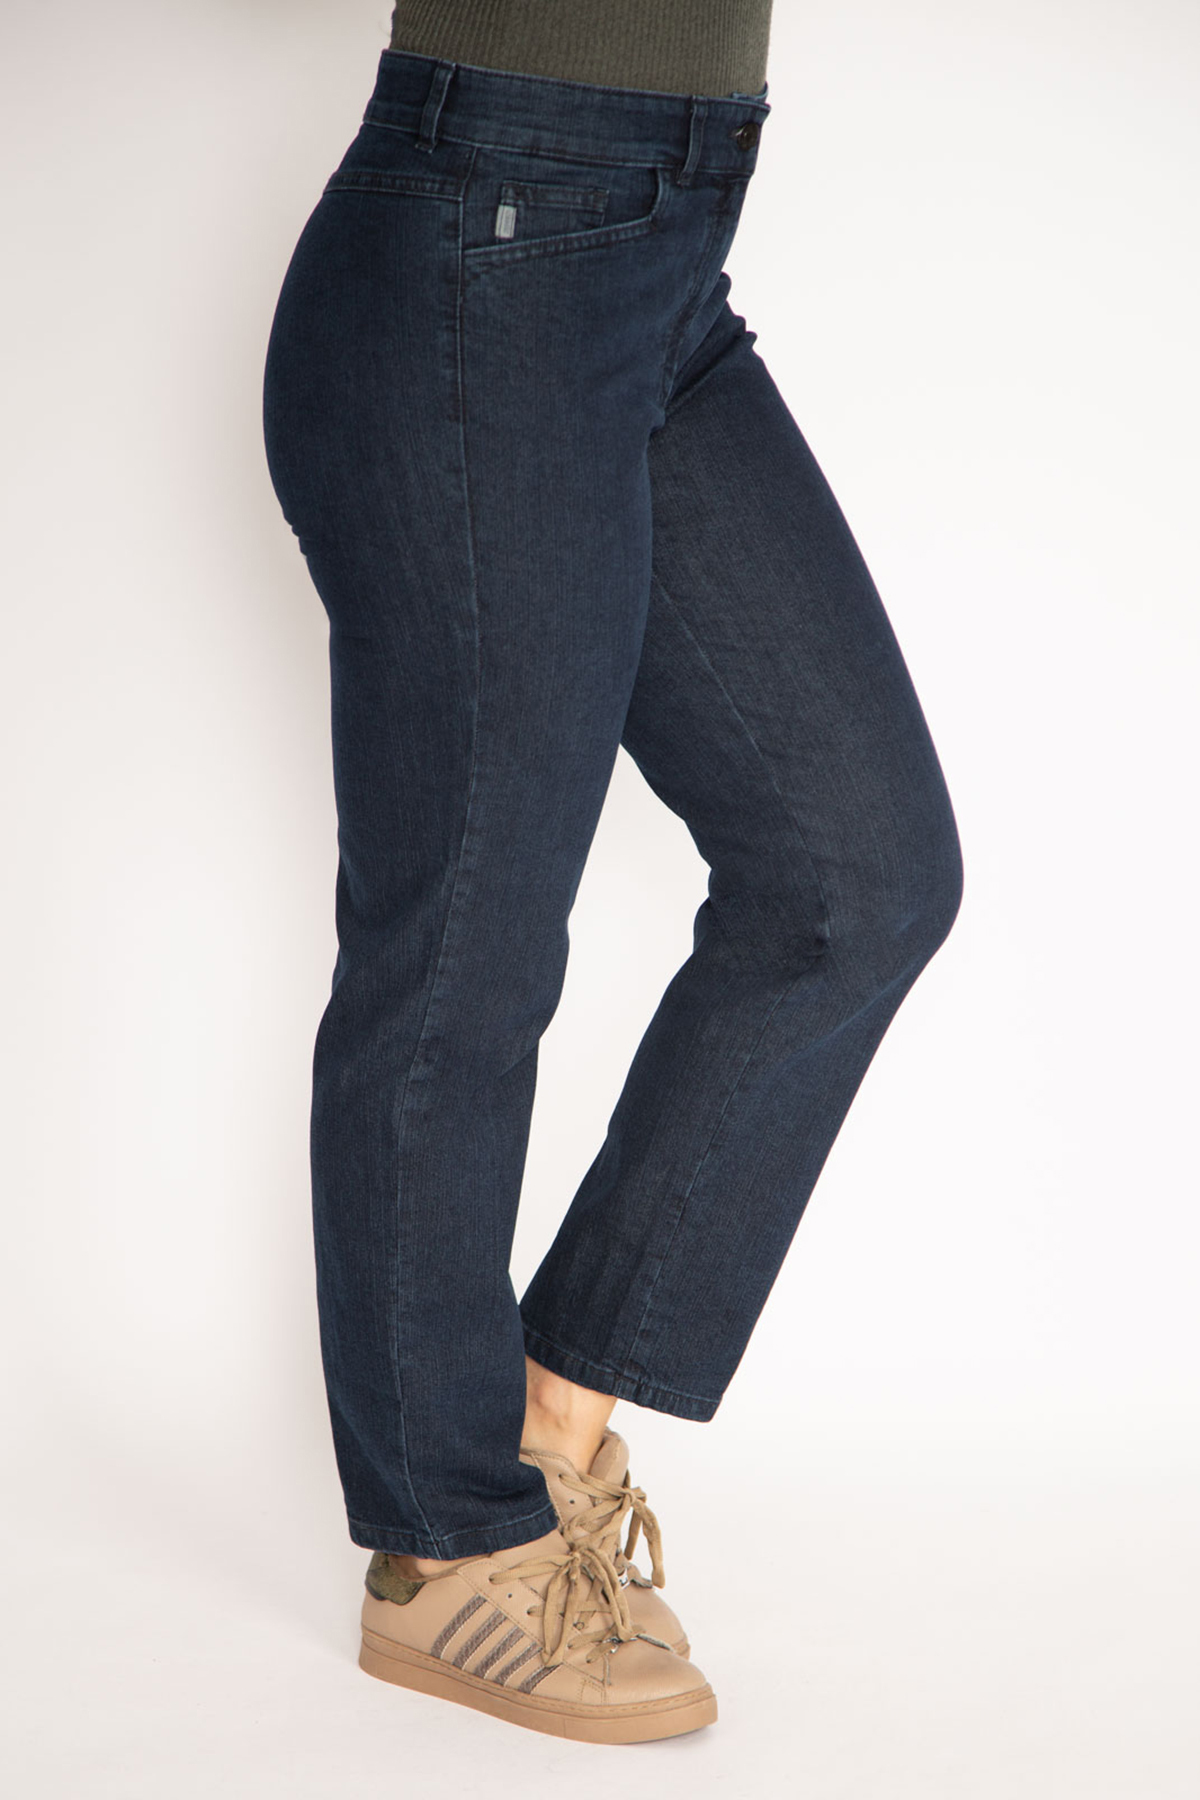 Levně Şans Women's Large Size Navy Blue Front Pocket Jeans Trousers